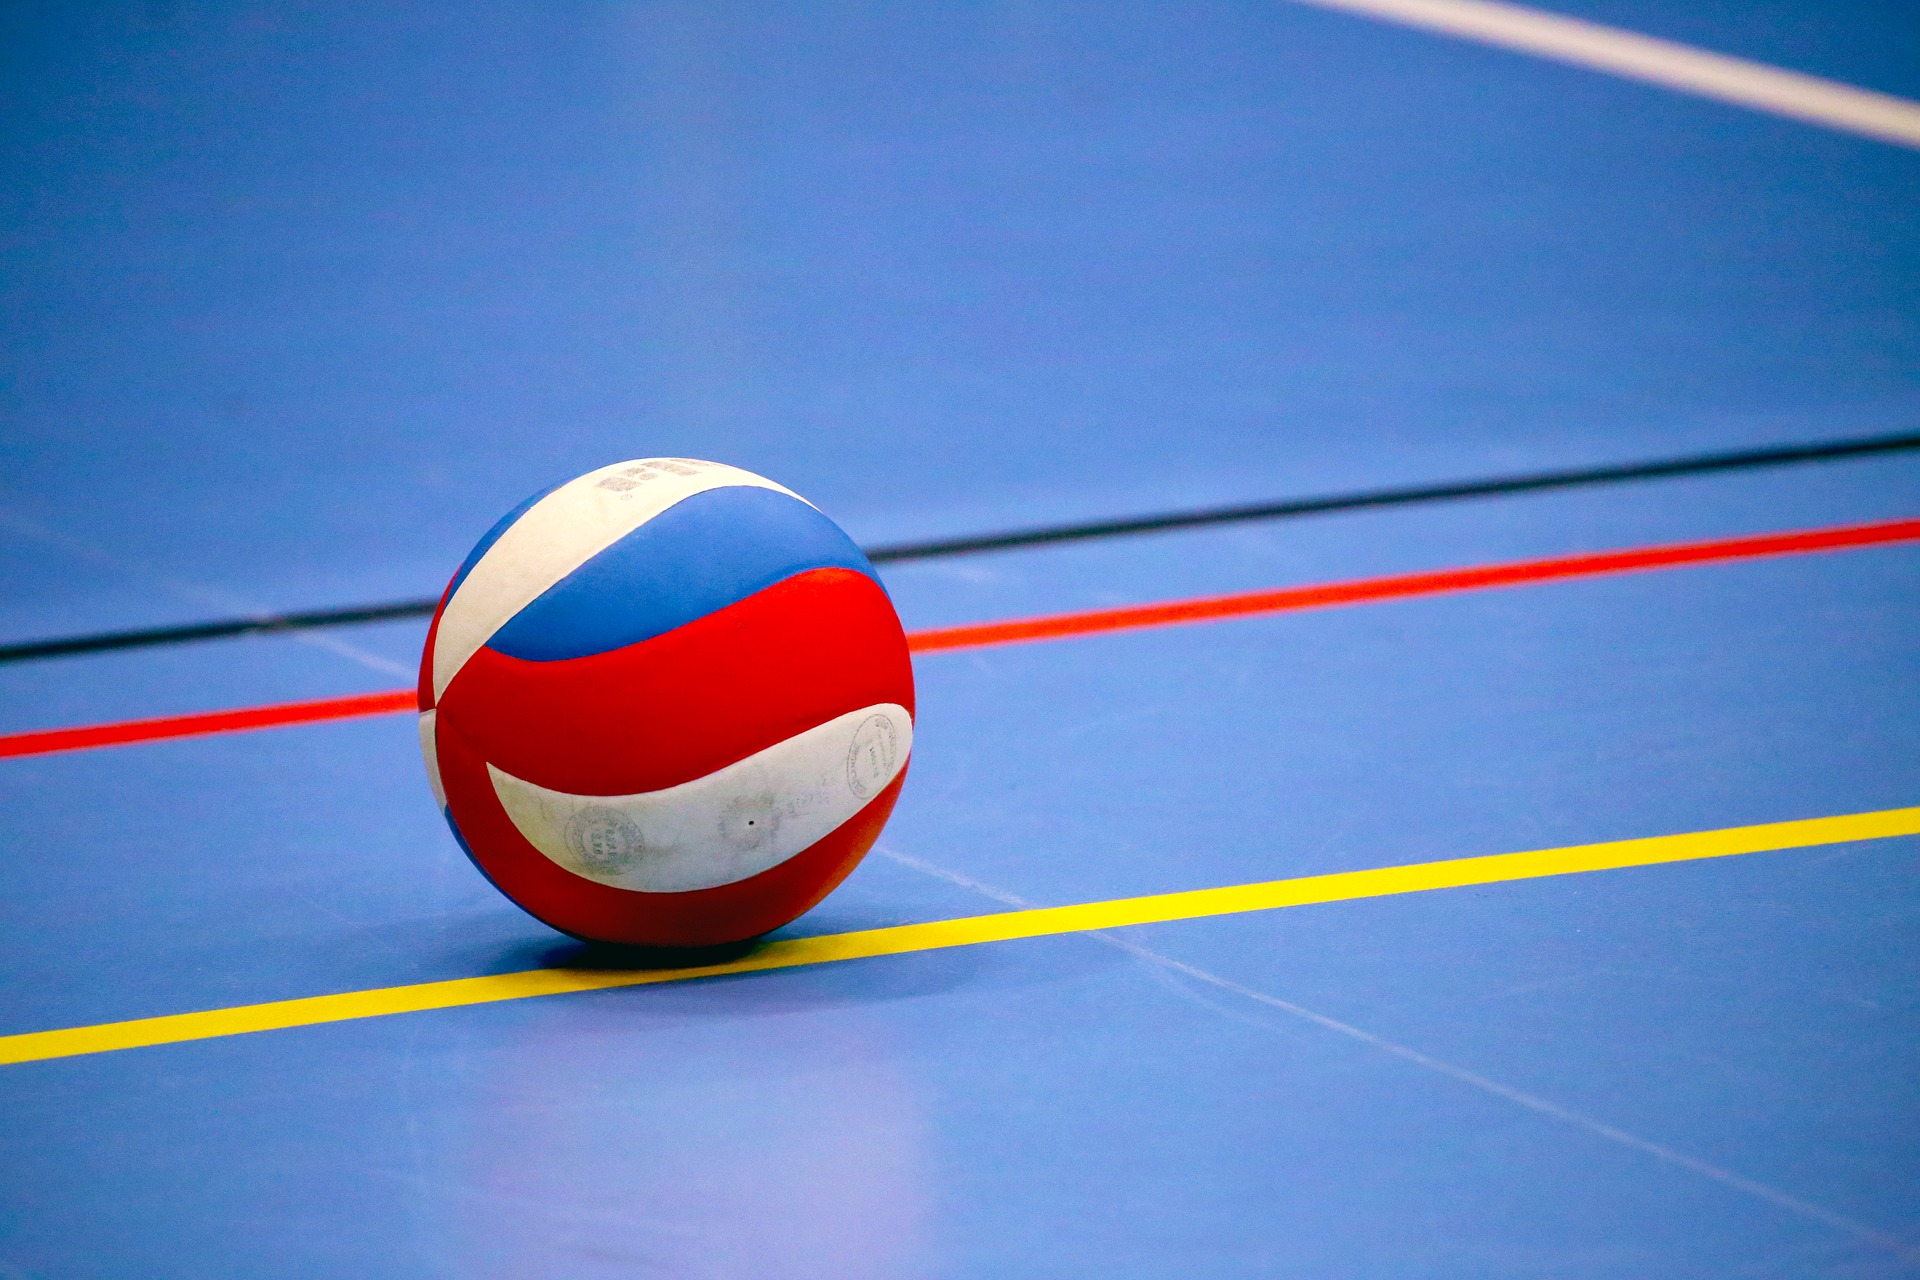 Волейболисты Рязановского вернулись к онлайн-тренировкам. Фото: pixabay.com